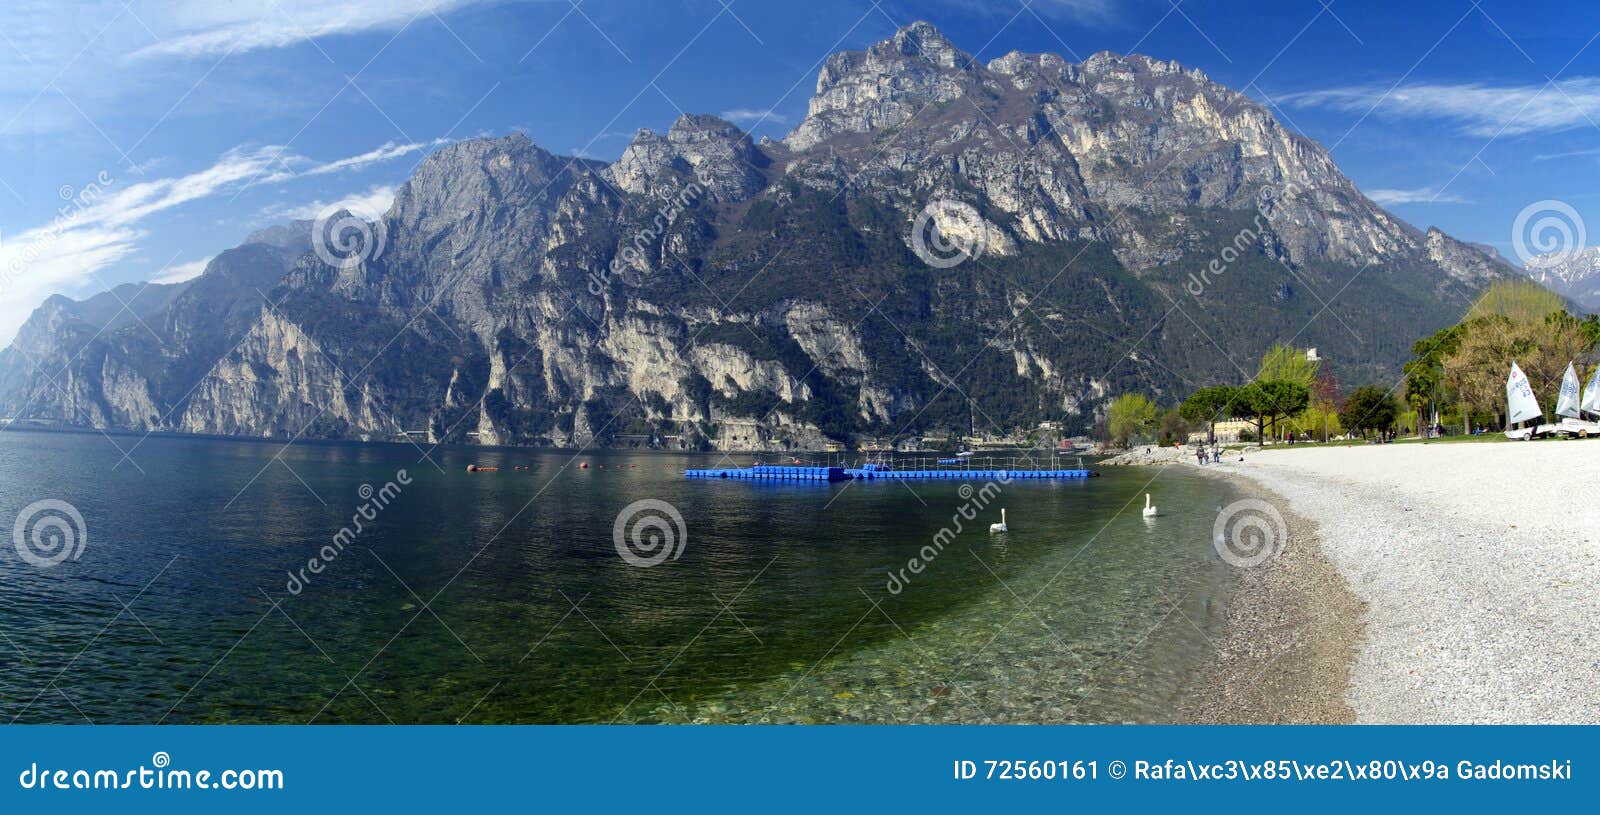 the lago di garda, italy.